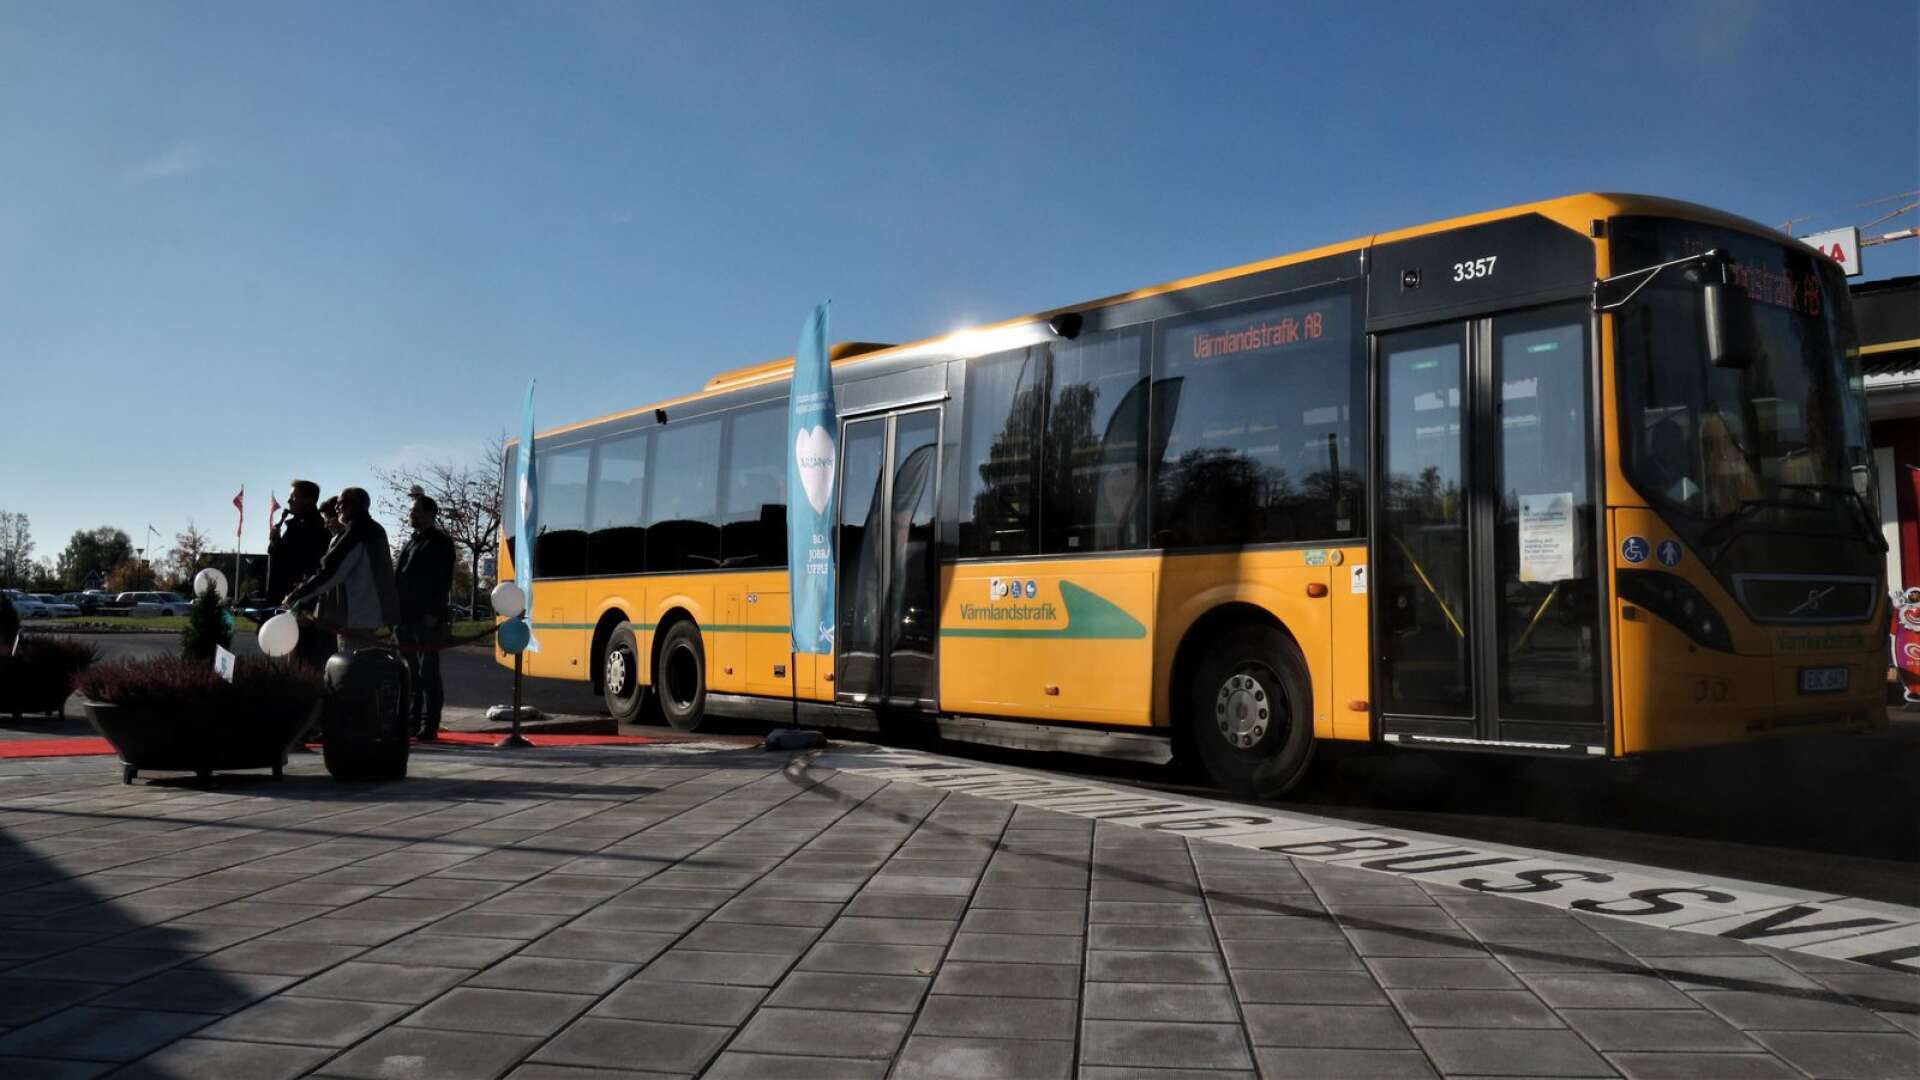 Nu är den färdig, den nya busstationen. Nu kan bussar enklare släppa av och ta på passagerare.